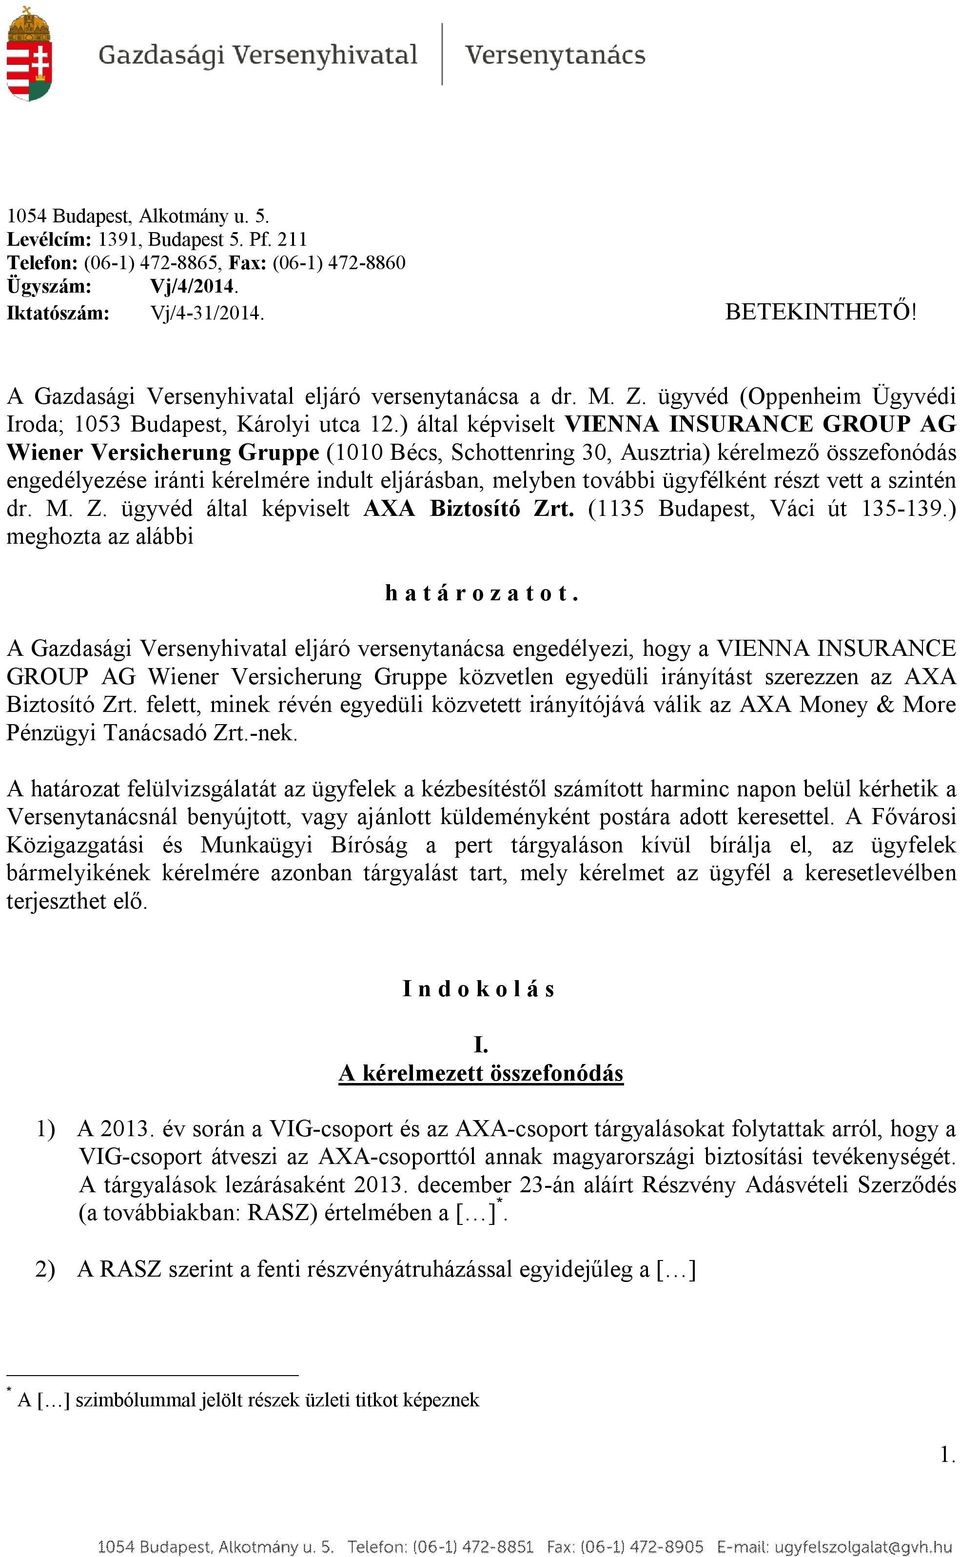 ) által képviselt VIENNA INSURANCE GROUP AG Wiener Versicherung Gruppe (1010 Bécs, Schottenring 30, Ausztria) kérelmező összefonódás engedélyezése iránti kérelmére indult eljárásban, melyben további